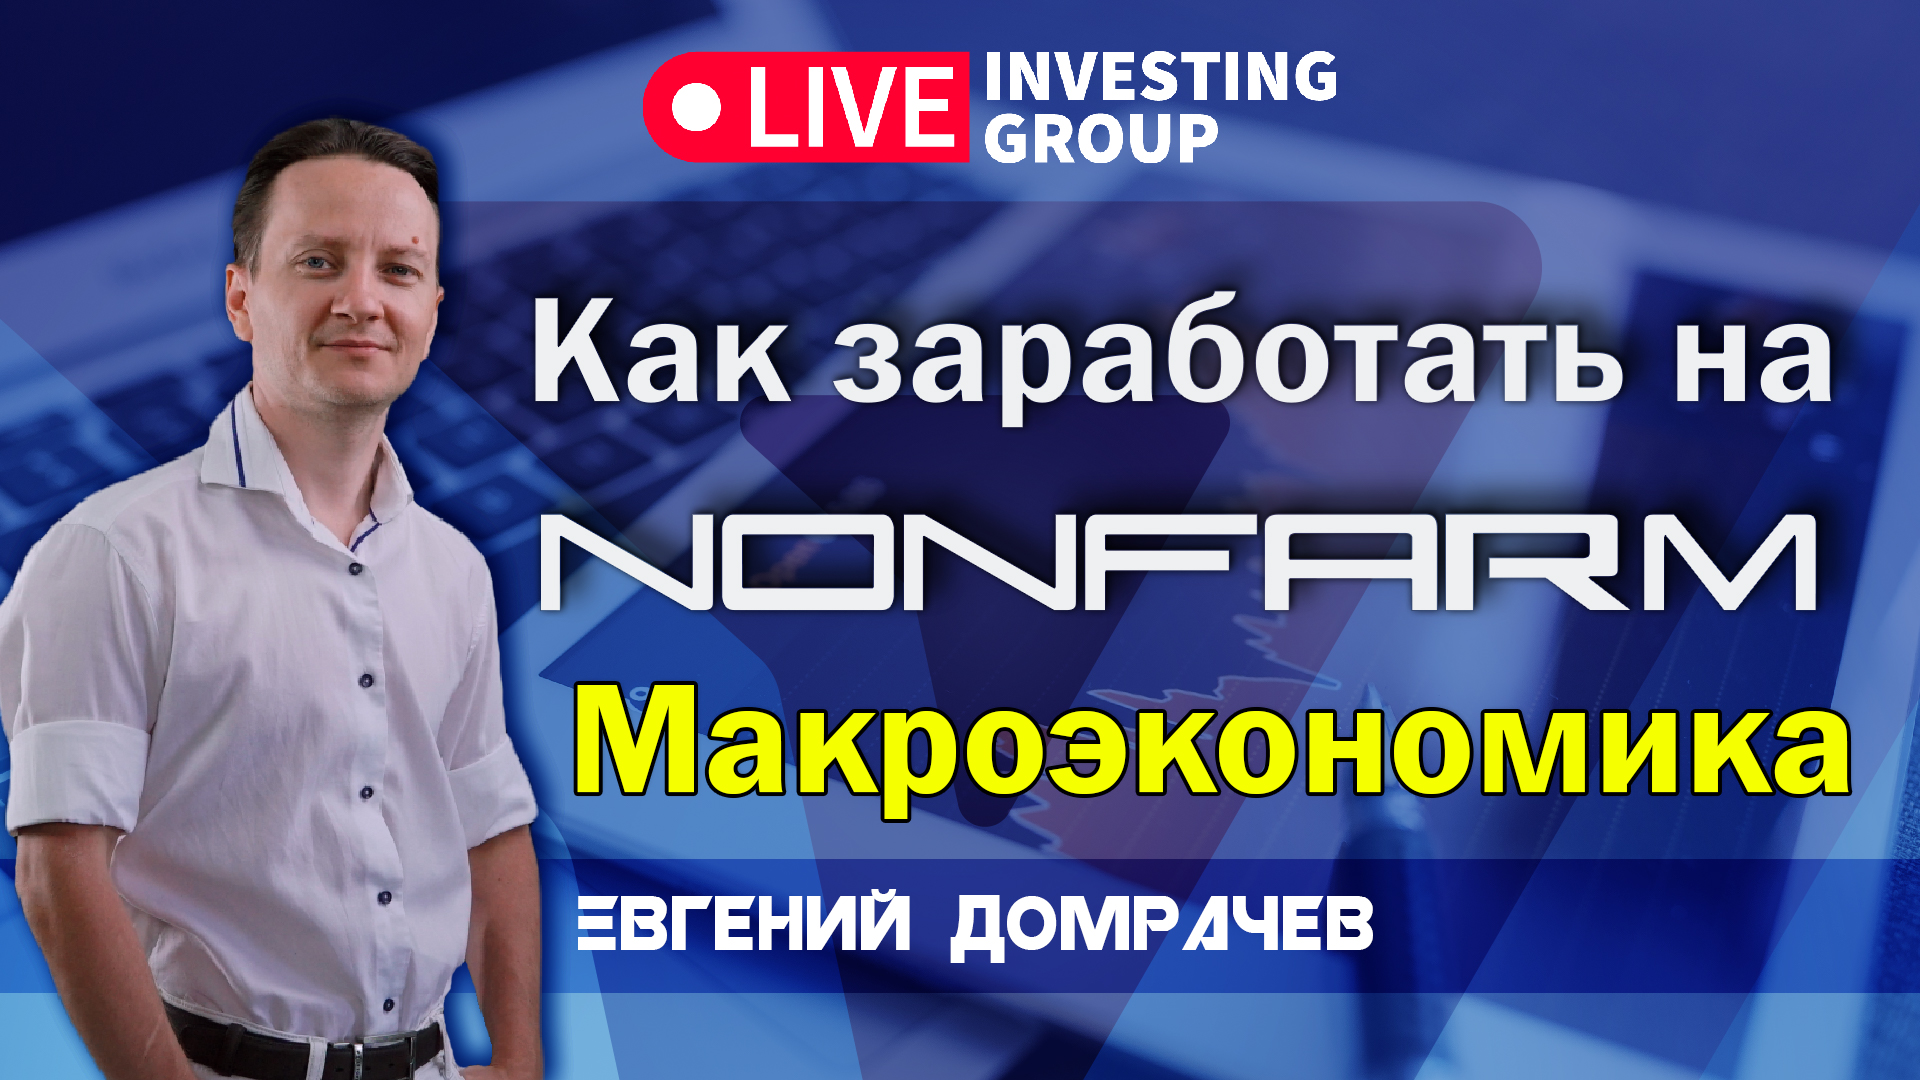 NonFarm. Как зарабатывать на новостях НонФарм? Макроэкономика с Евгением Домрачевым | Live Investing